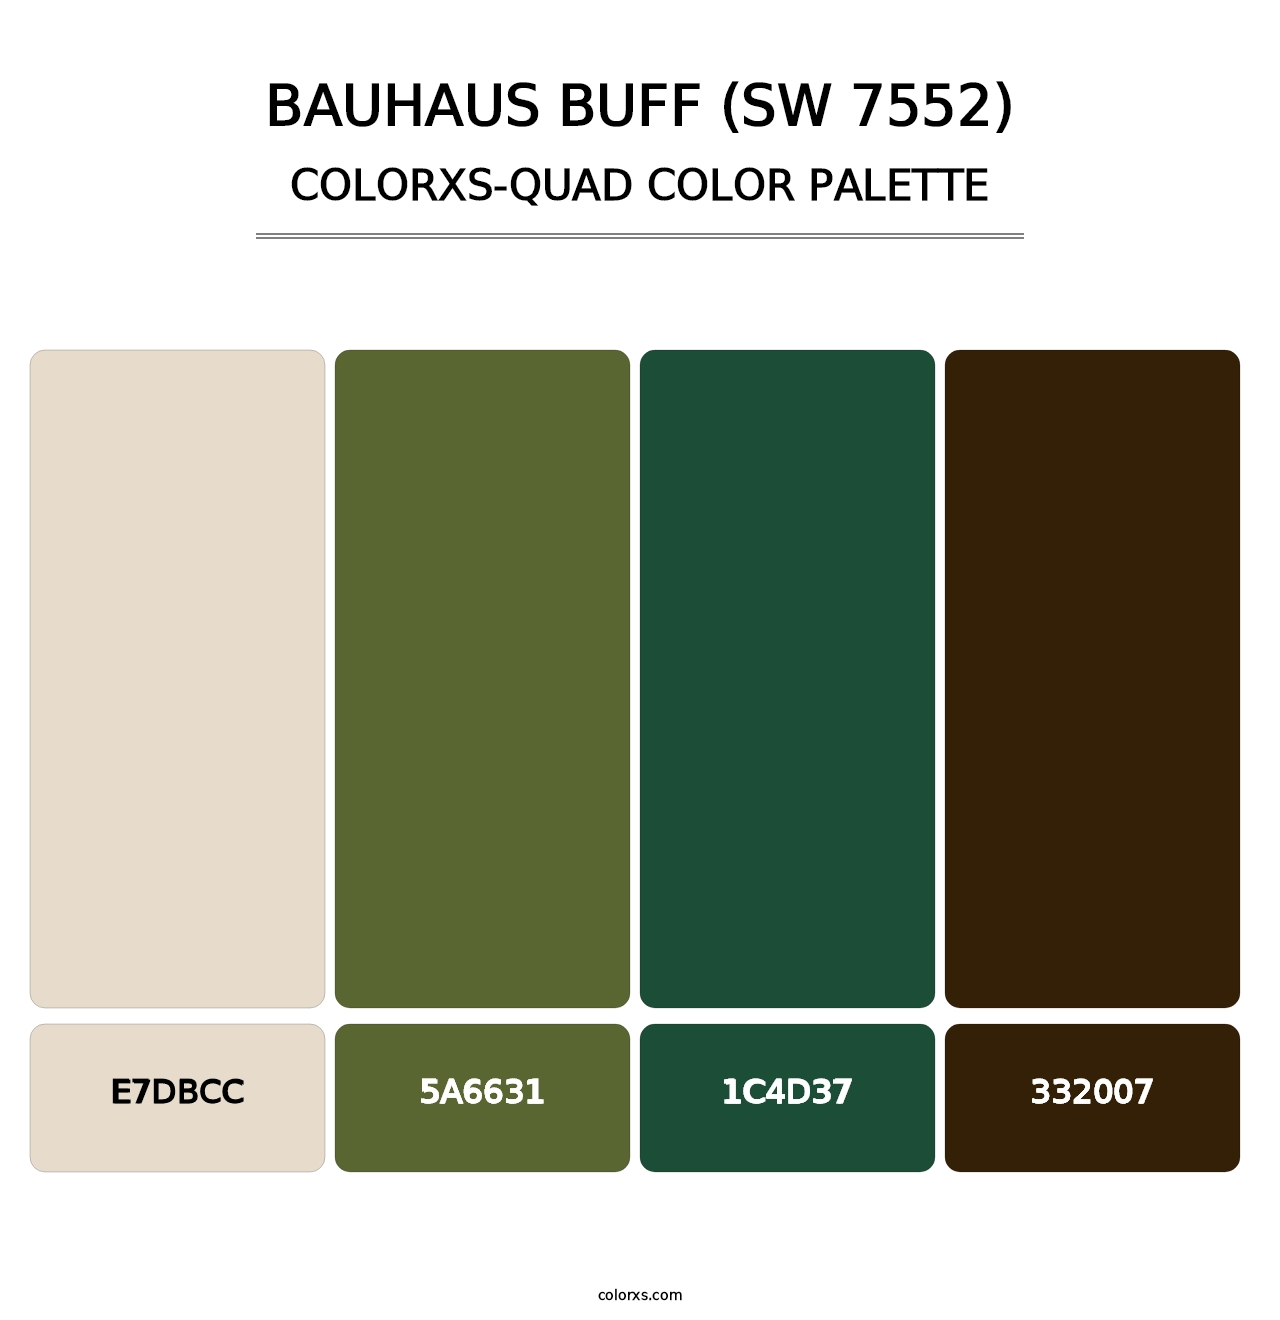 Bauhaus Buff (SW 7552) - Colorxs Quad Palette